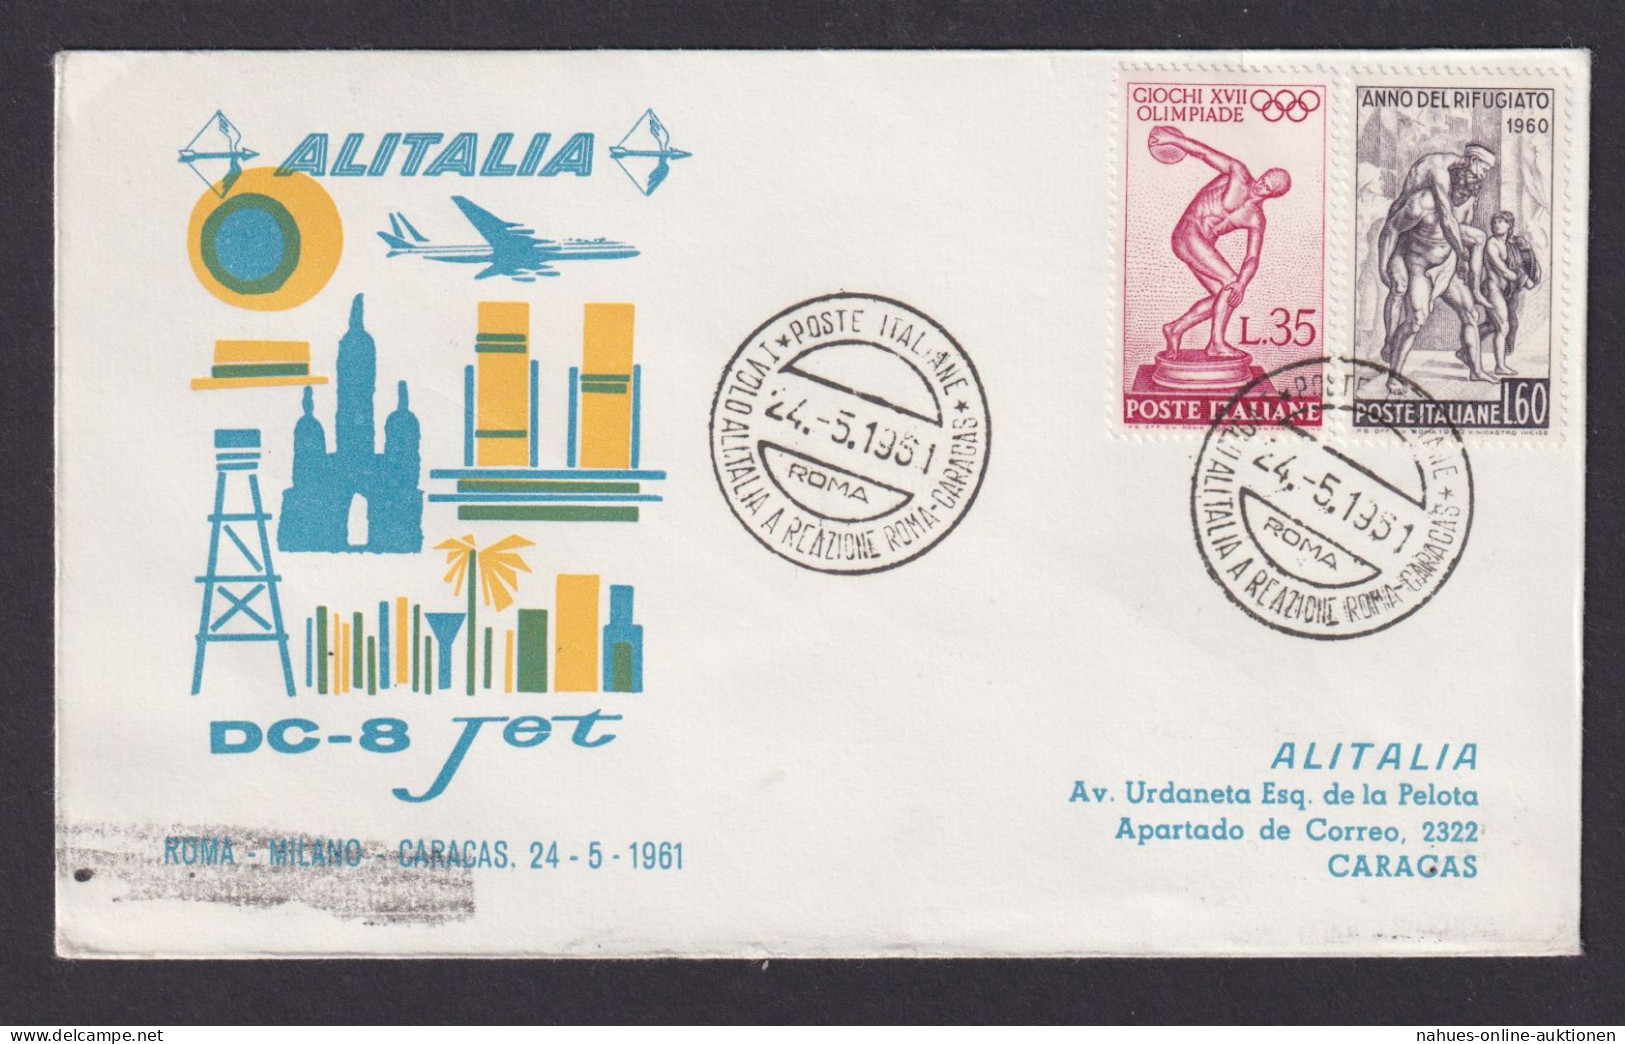 Flugpost Brief Air Mail Italien Alitalia DC 8 Jet Rom Mailand Caracas Venezuela - Used